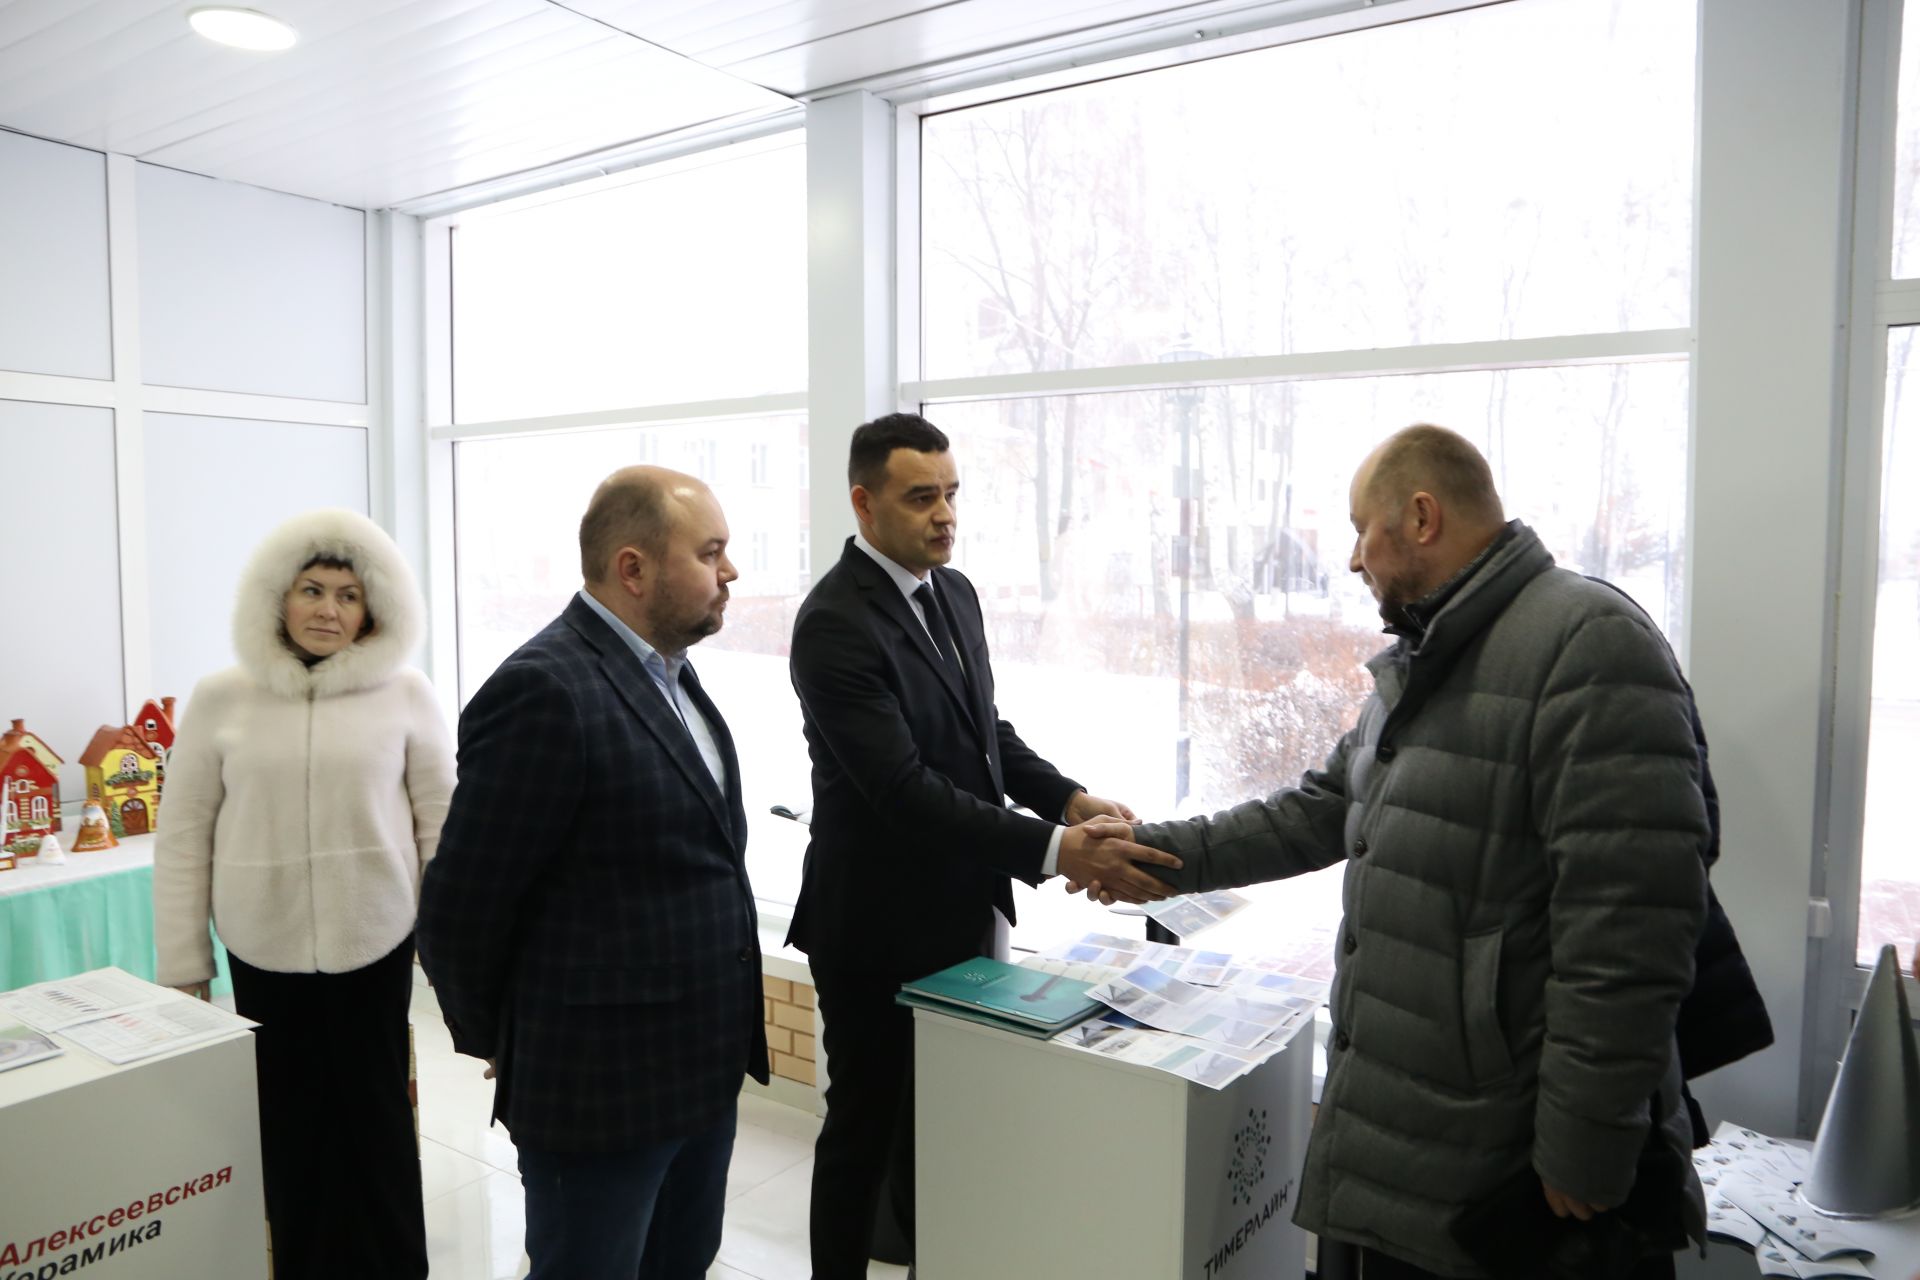 Асгат Сафаров ознакомился с товарами, произведенными в Алексеевском районе